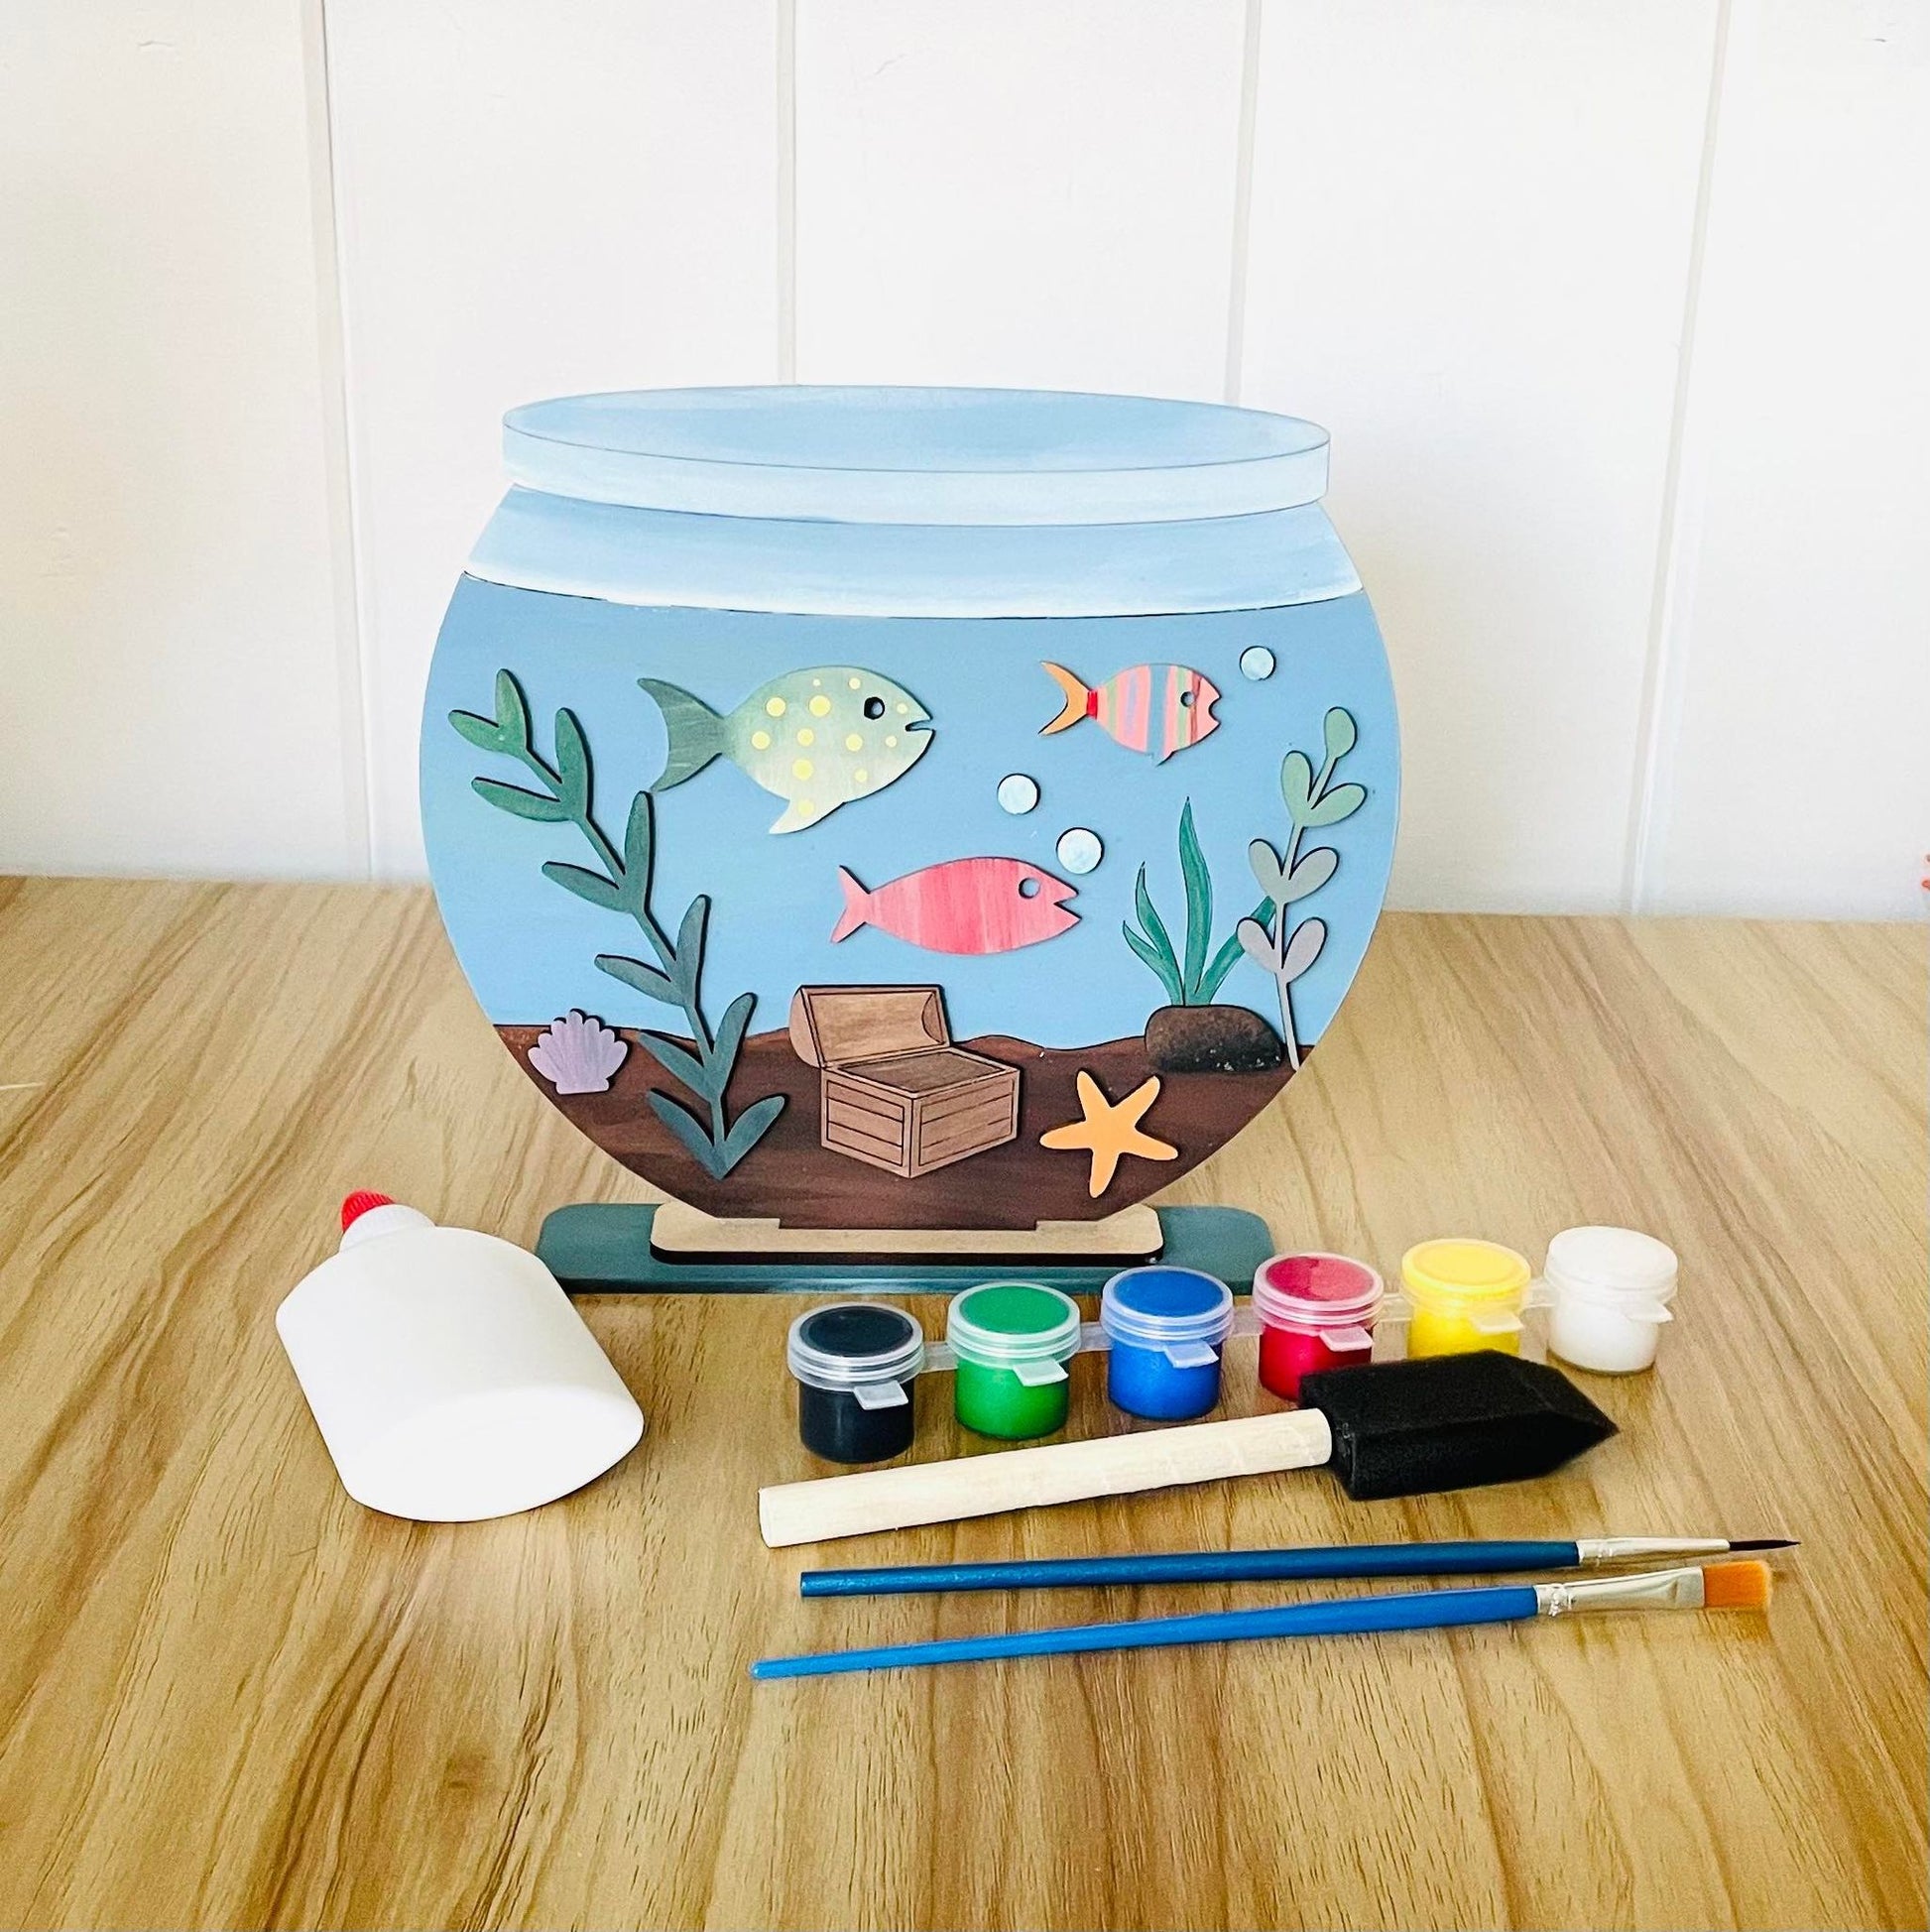 DIY Fish Bowl Craft – My Art Box